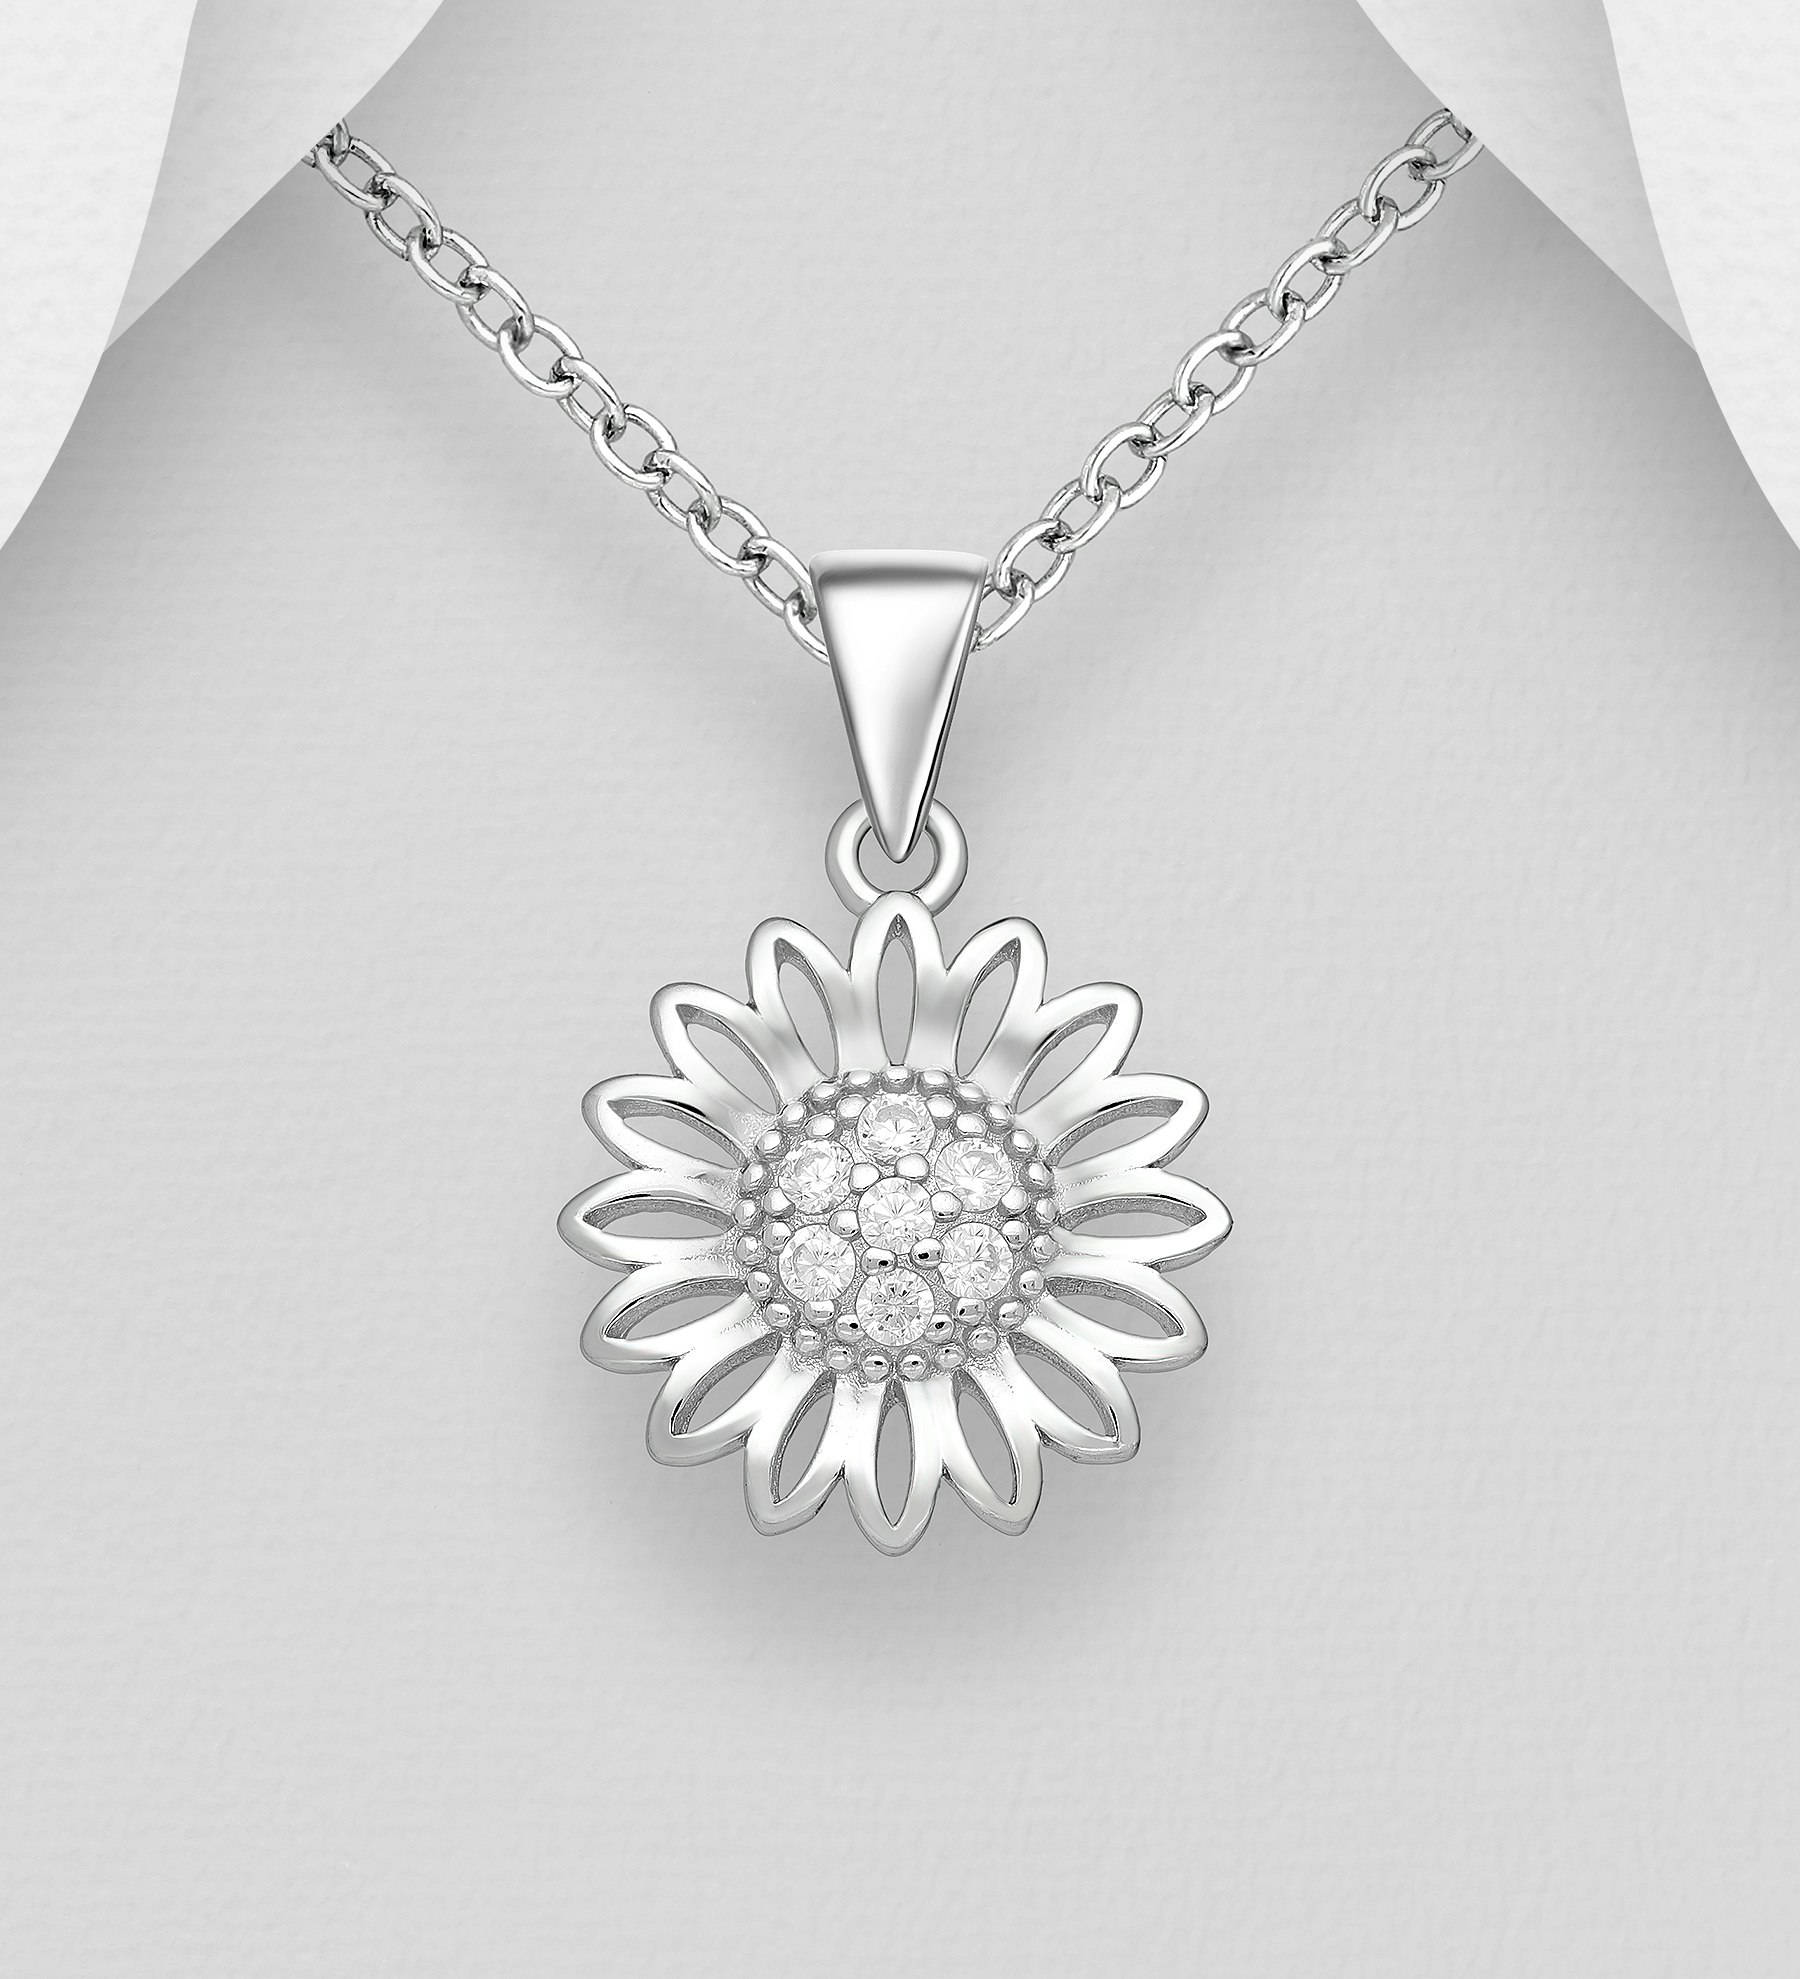 Silverhalsband Solros med glittrande Cubic stenar - fint halsband till tjej/ dam i äkta 925 sterling silver